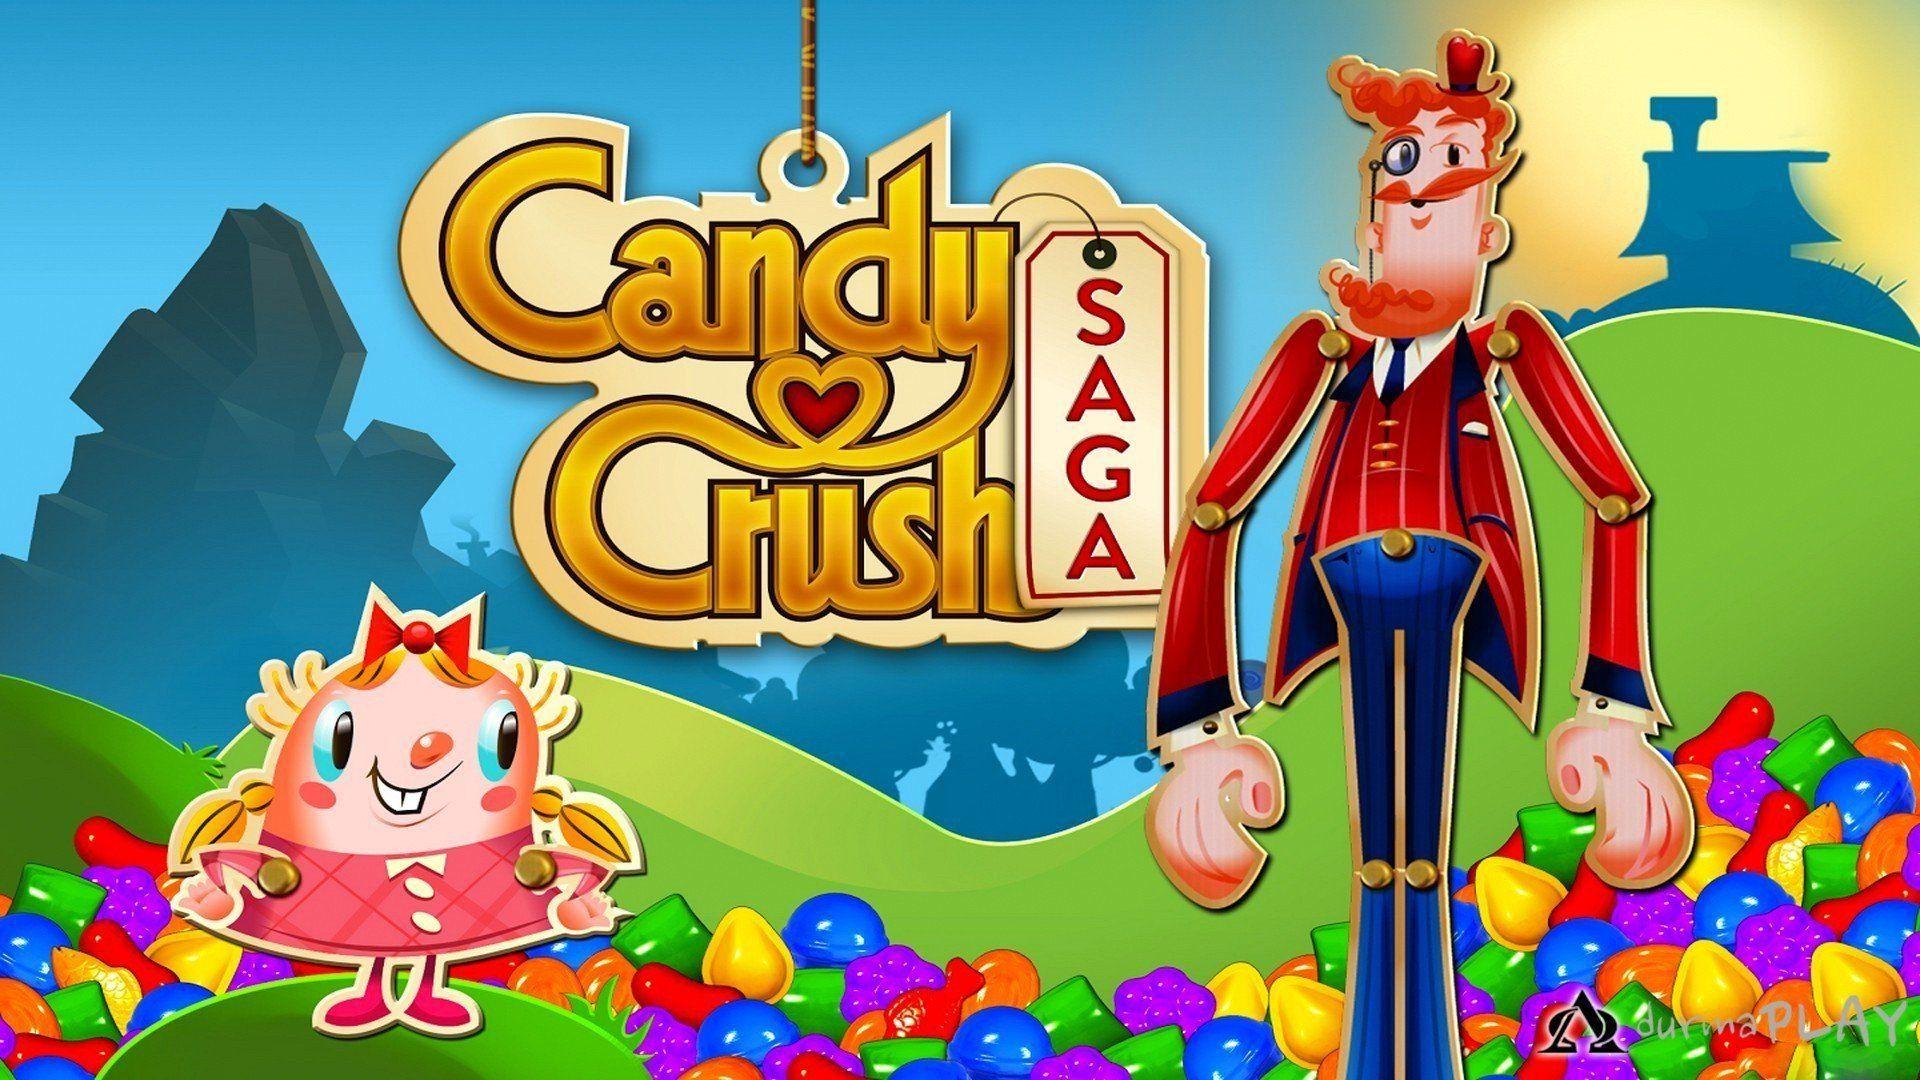 Candy Crush Saga HD Wallpaper